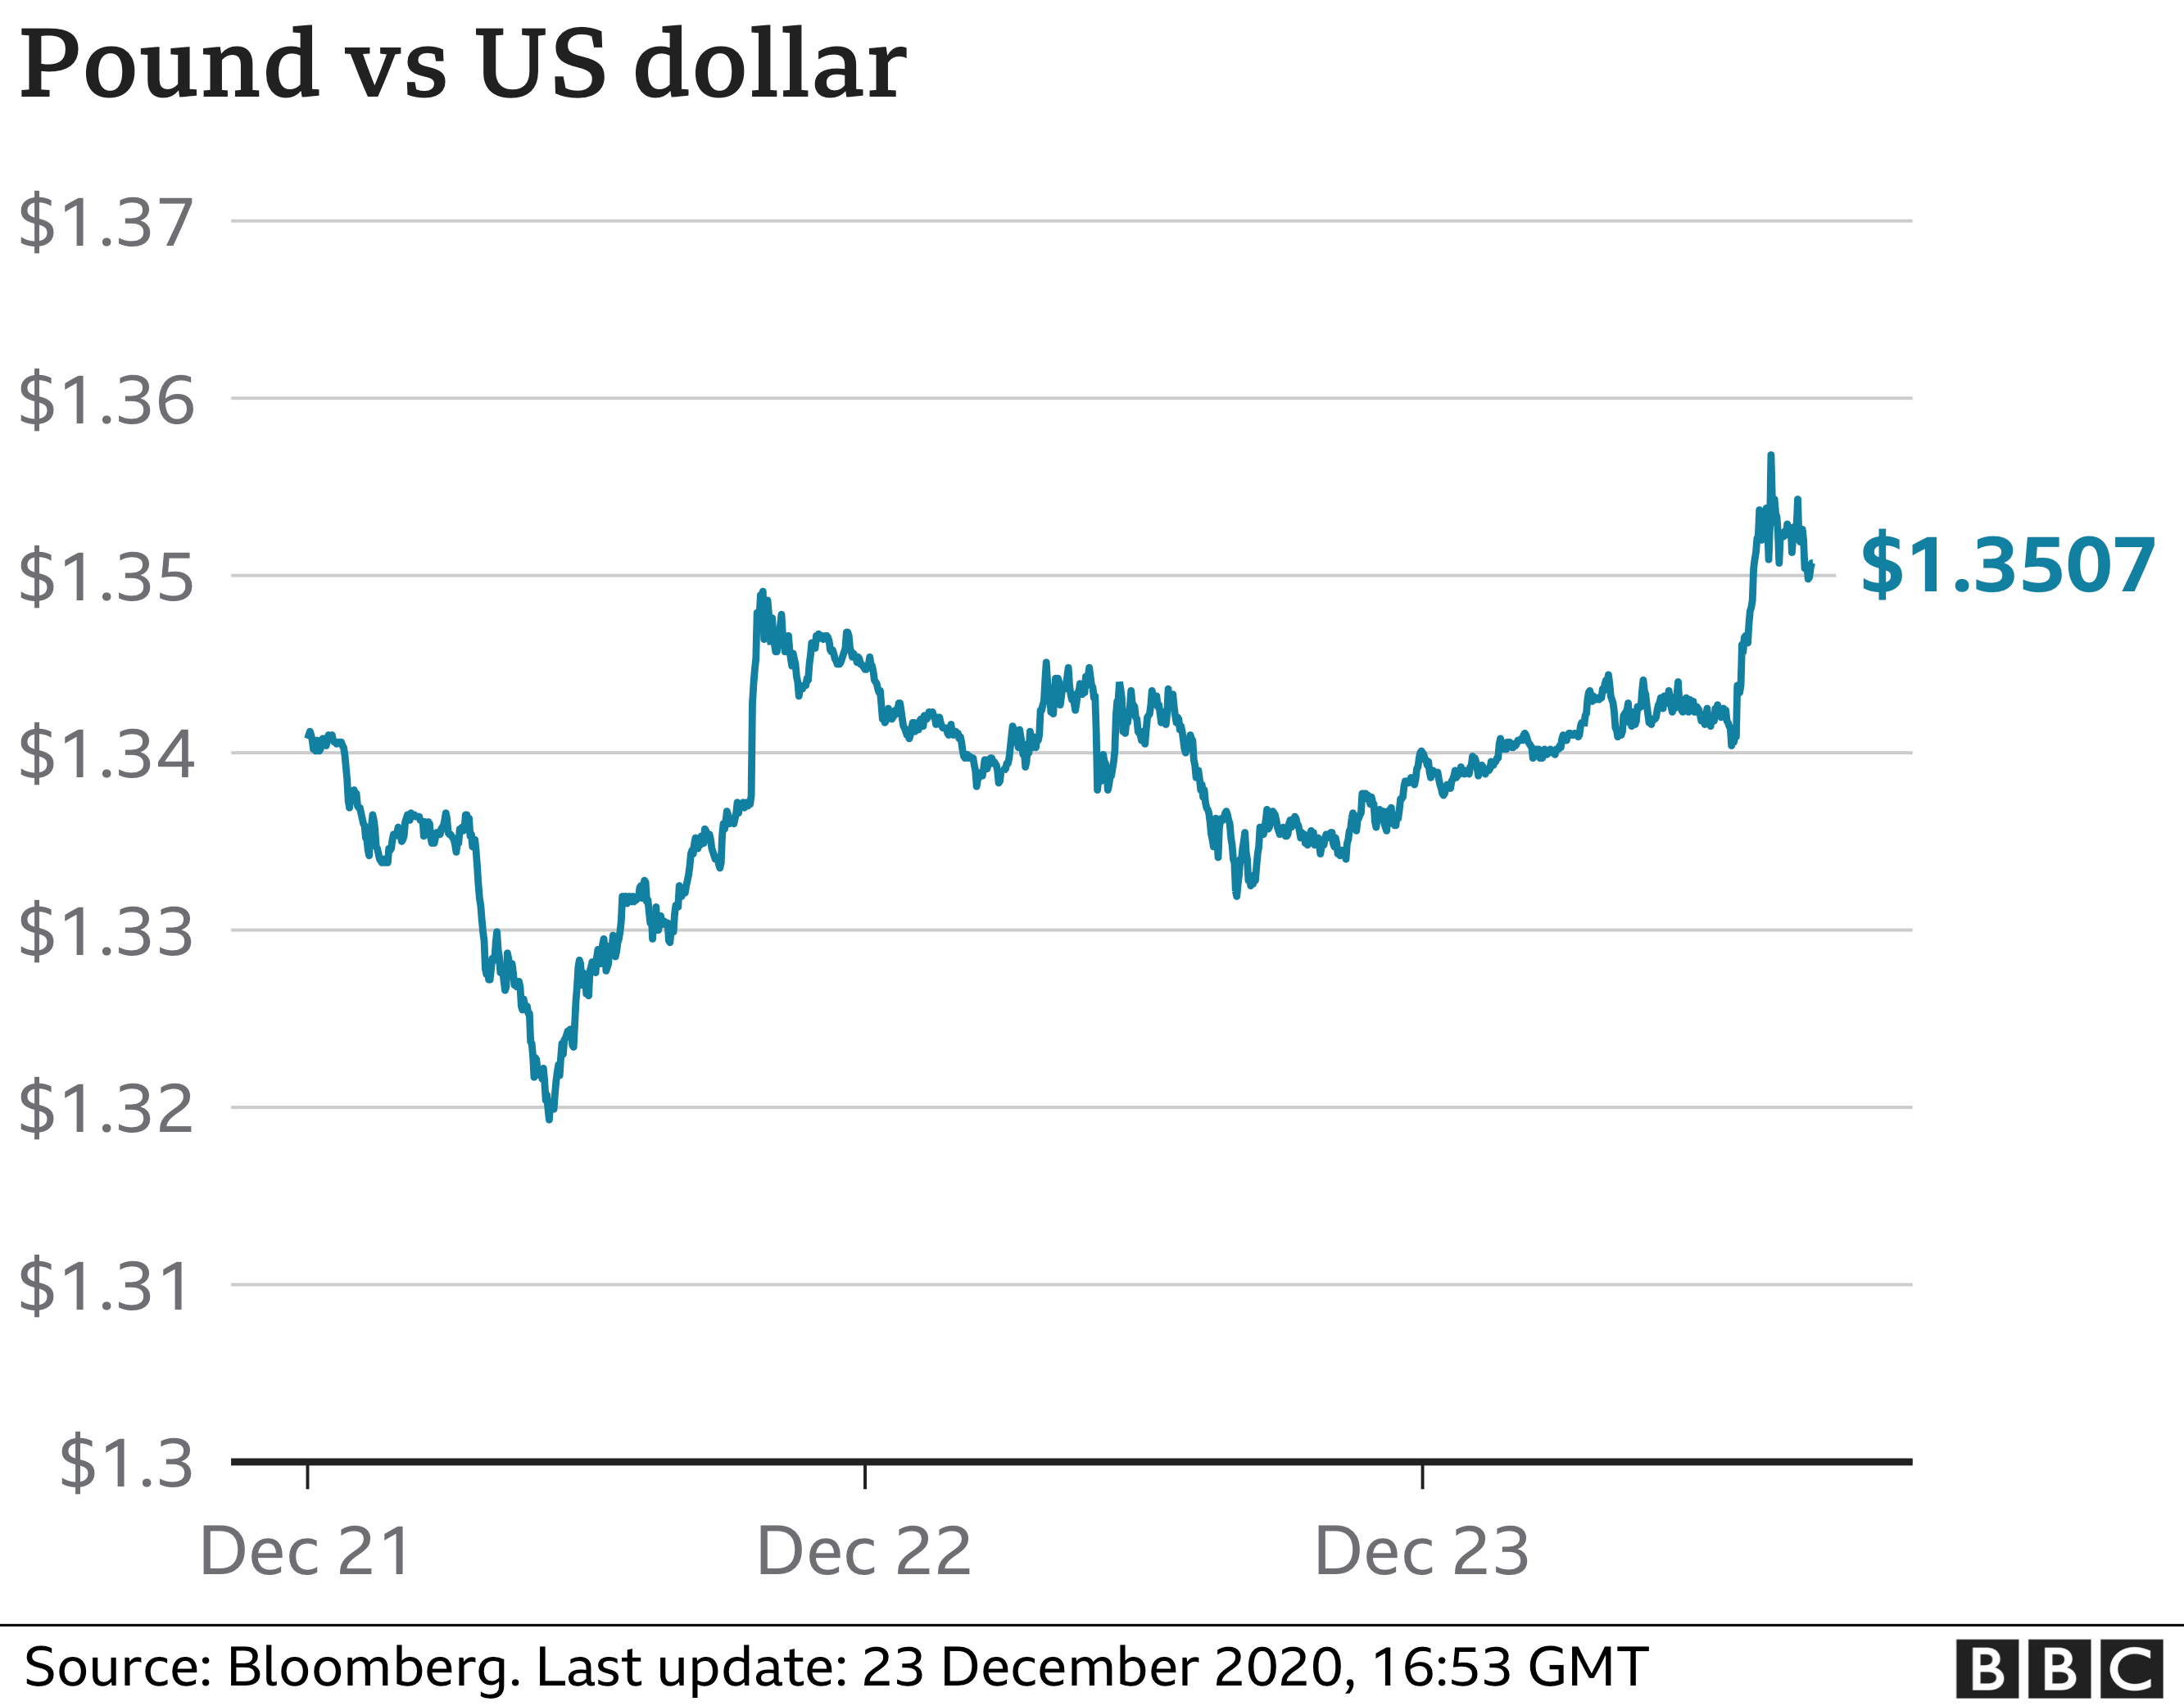 Pound v US dollar